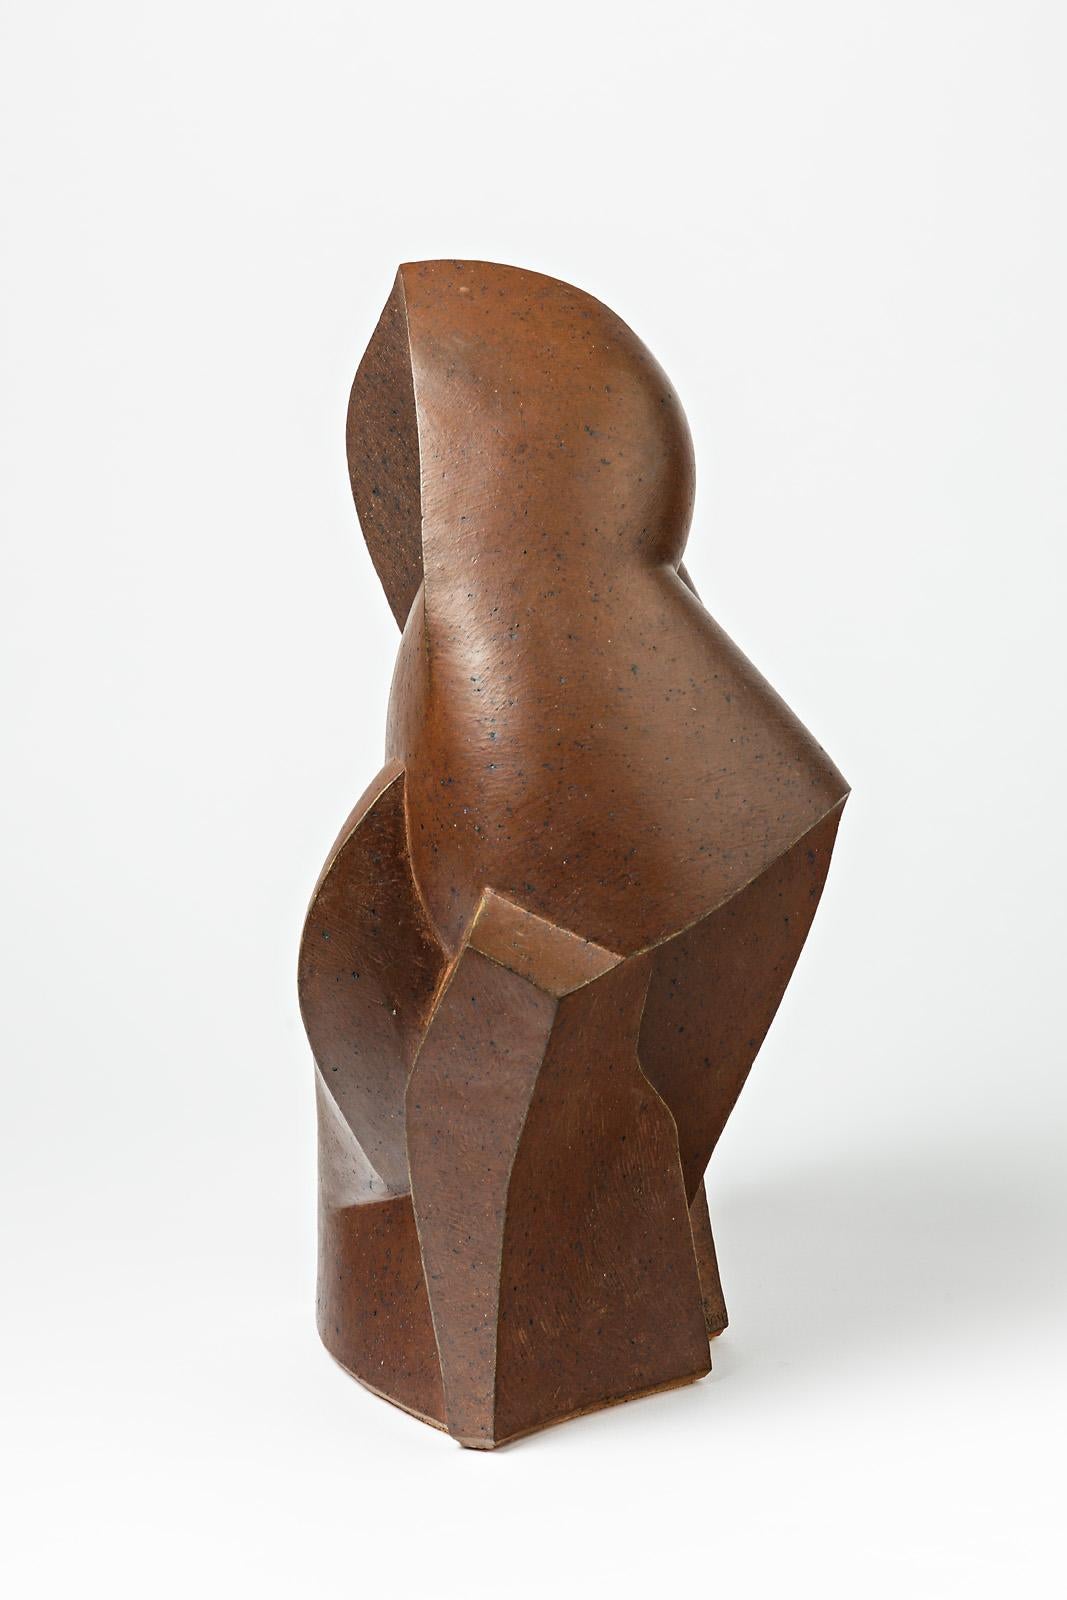 A ceramic sculpture entitled 